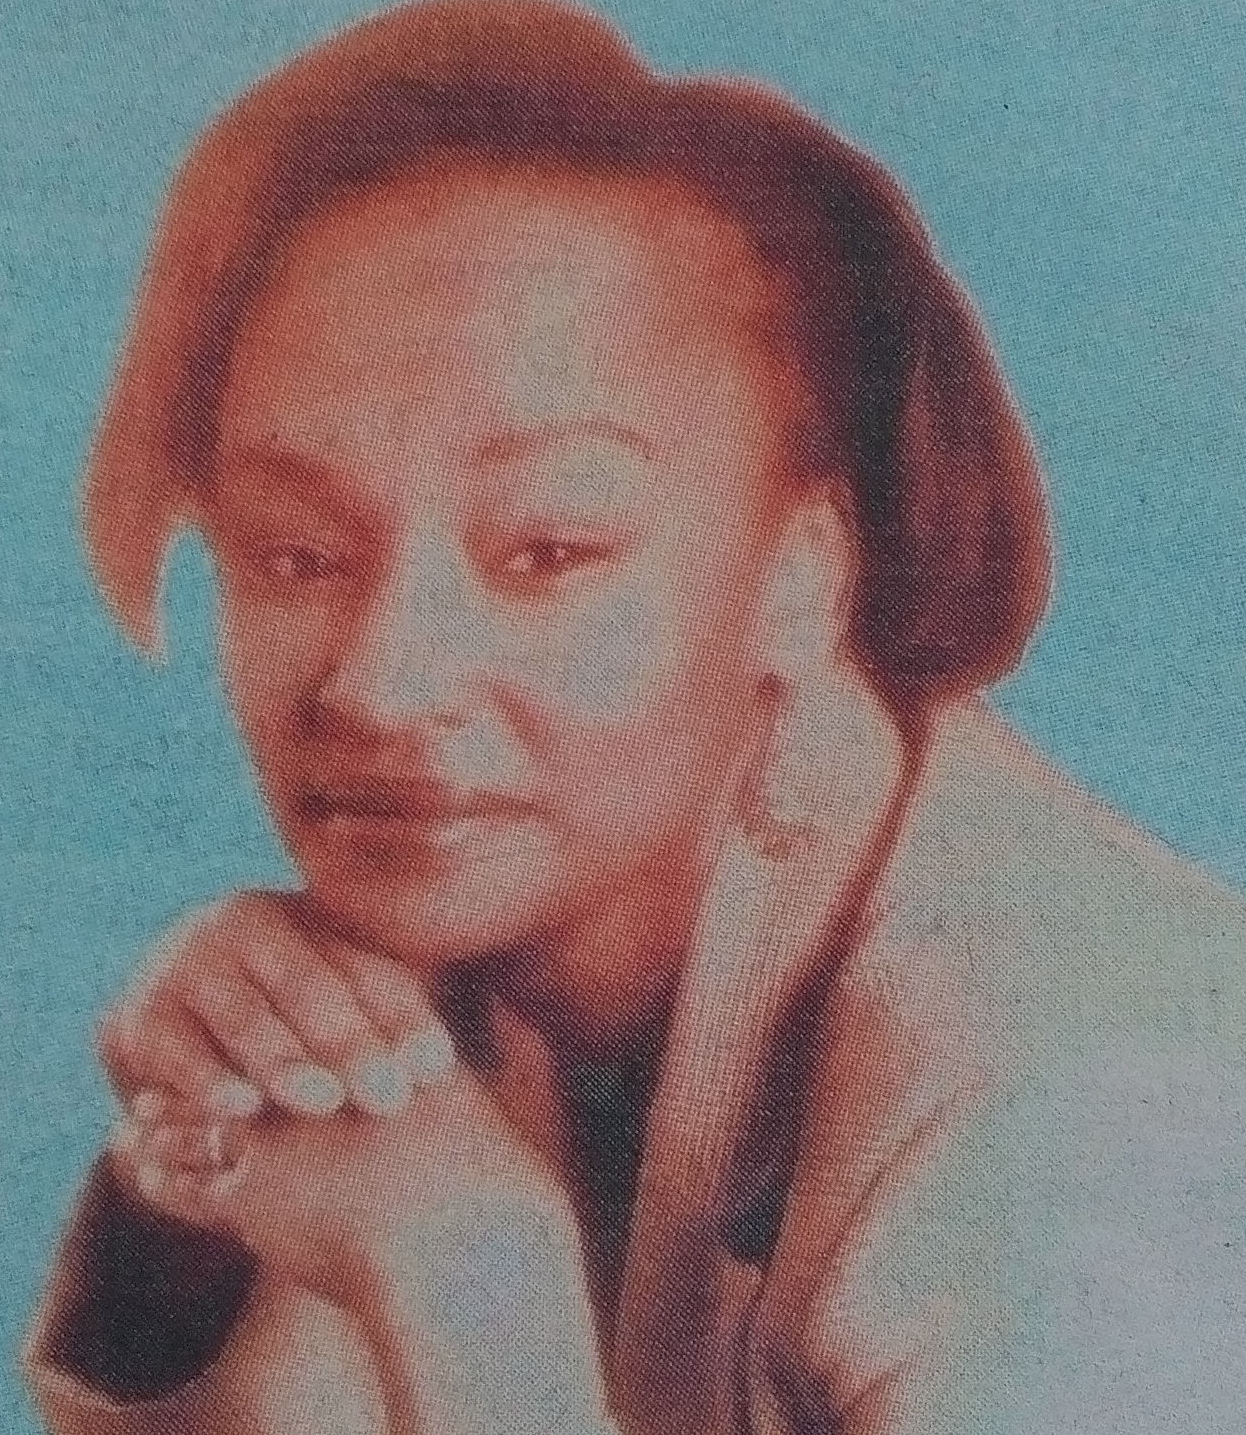 Obituary Image of Judy Nini Njaga Lacassagne